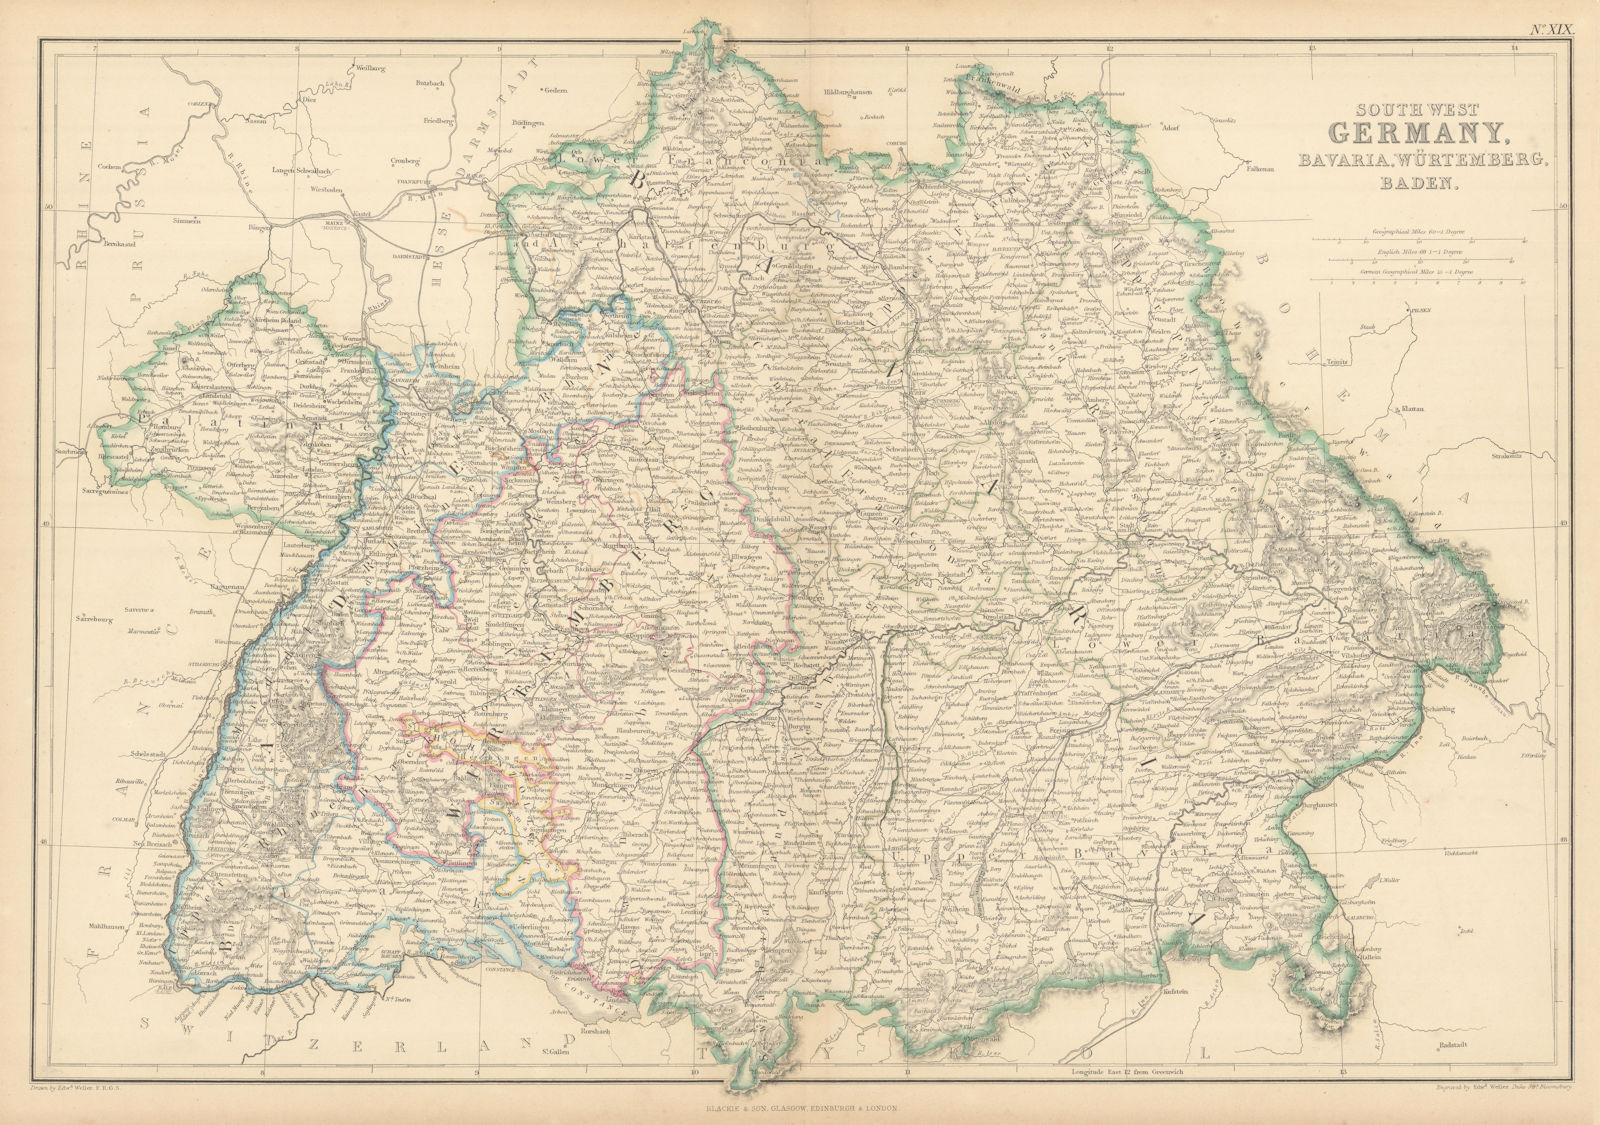 South-West Germany, Bavaria, Würtemberg & Baden. Bayern. WELLER 1859 old map